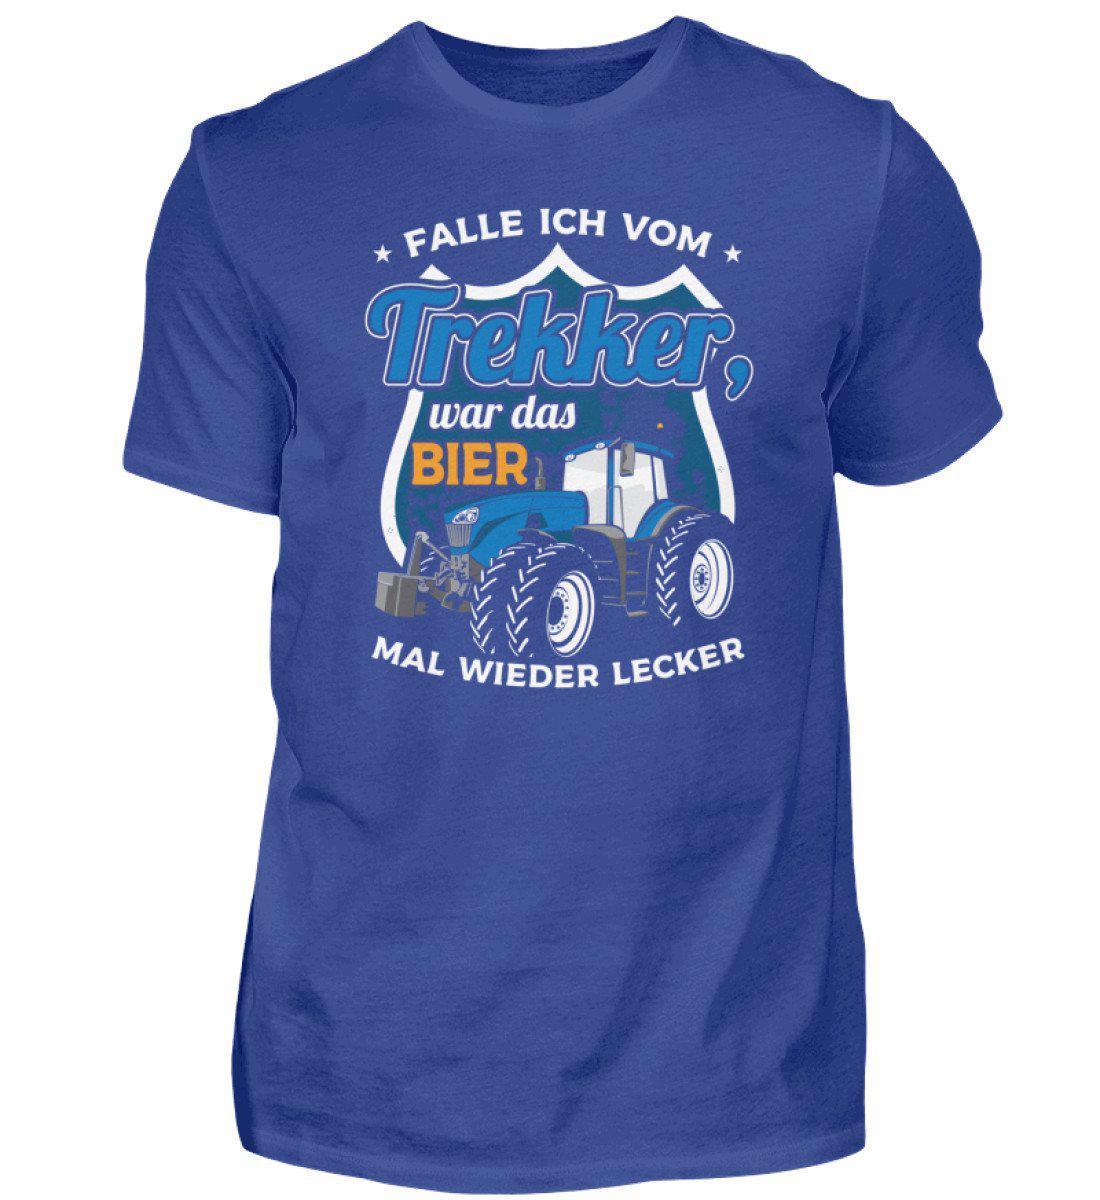 Falle ich vom Trekker Bier · Herren T-Shirt-Herren Basic T-Shirt-Royal Blue-S-Agrarstarz